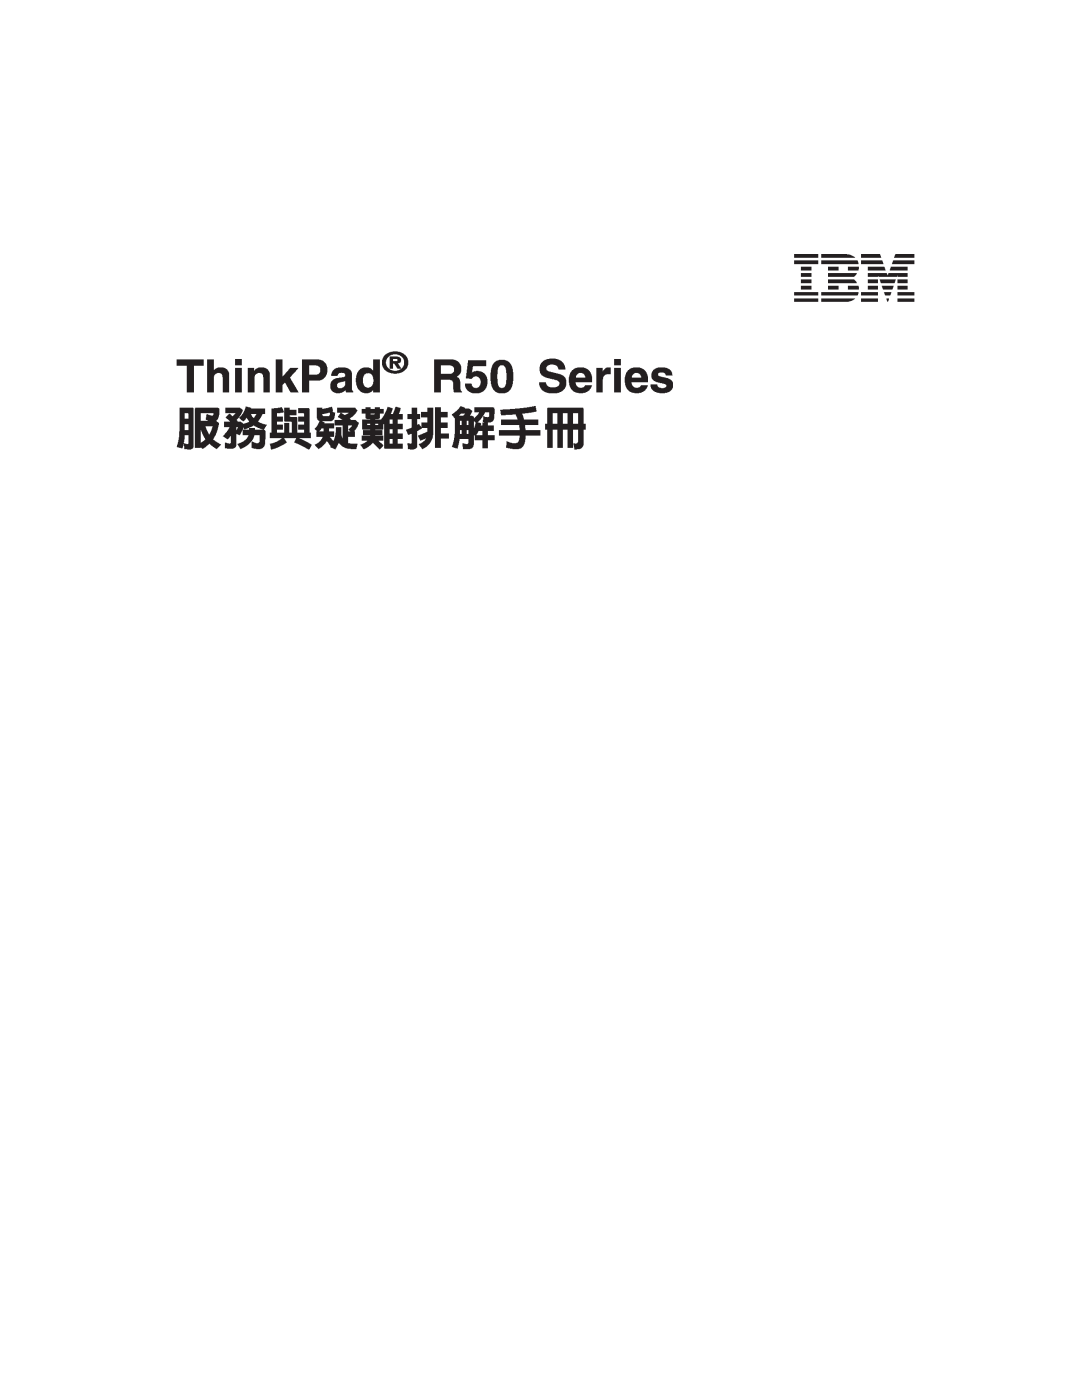 IBM manual ThinkPad R50 Series, A P Γu 